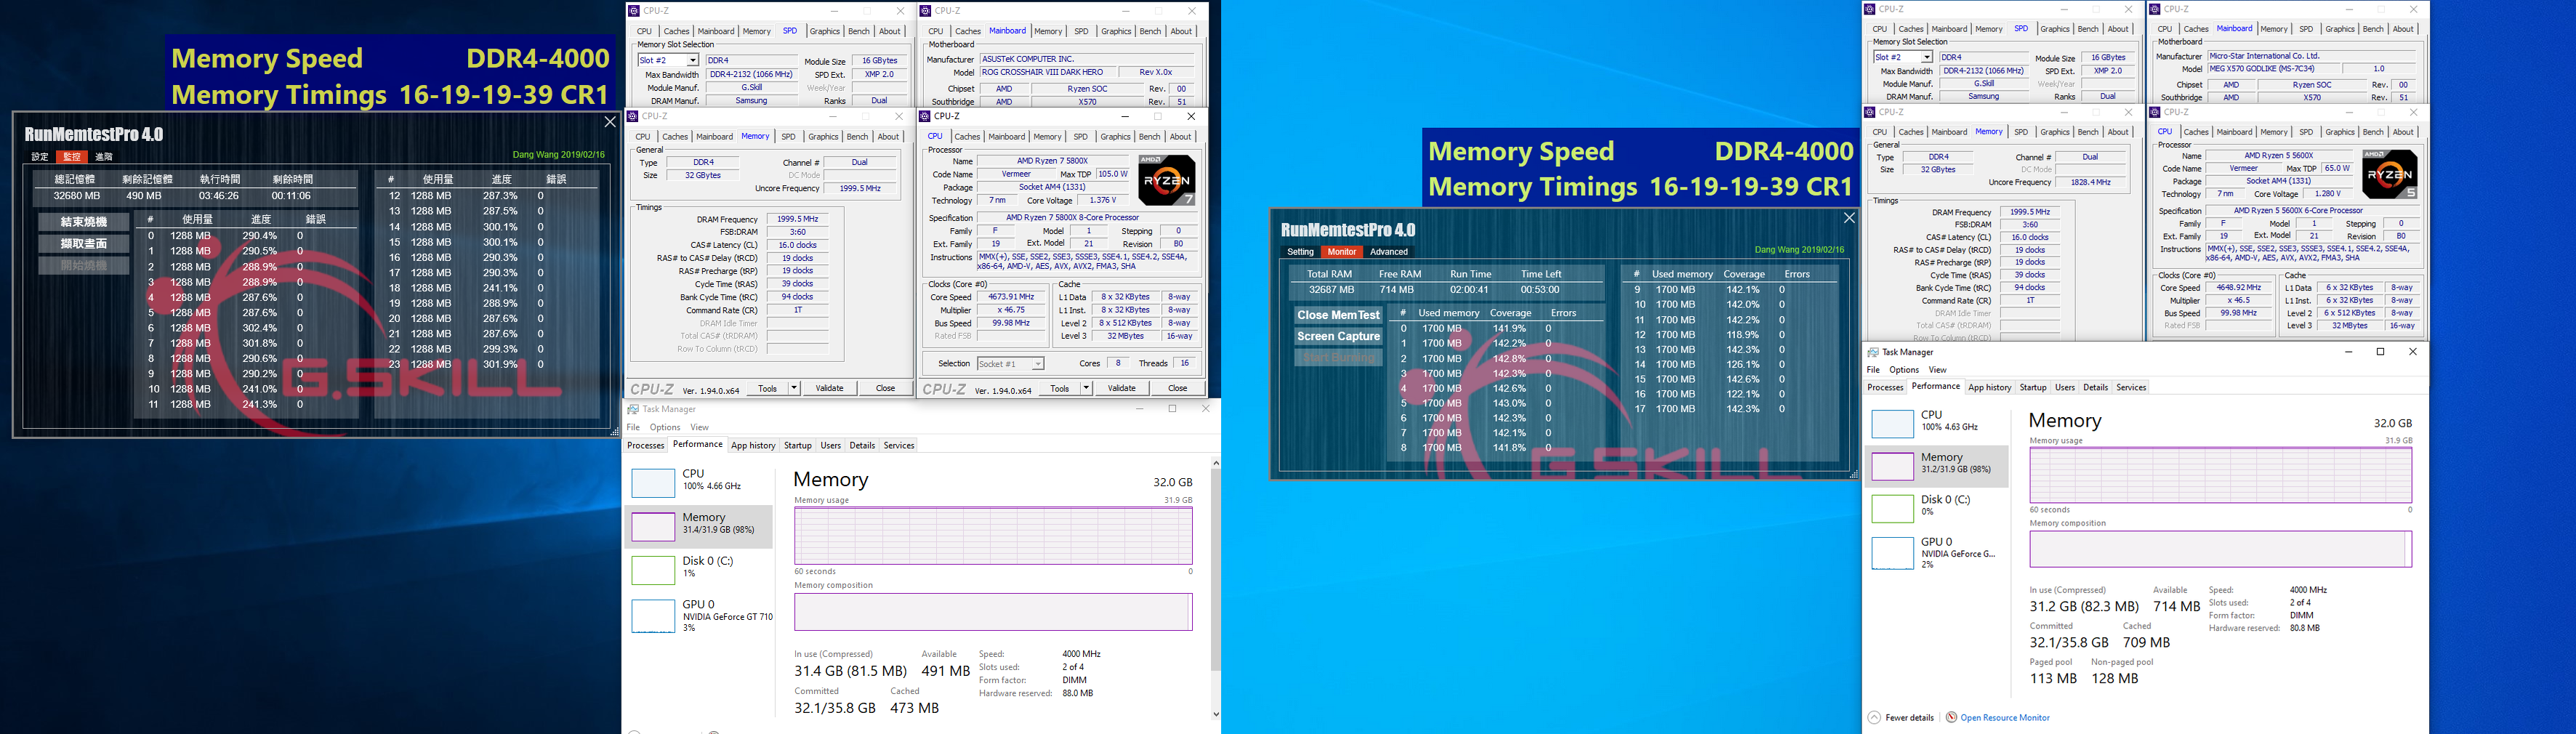 Risorsa grafica - foto, screenshot o immagine in genere - relativa ai contenuti pubblicati da amdzone.it | Nome immagine: news31306_G-SKILL-Trident-Z-Neo-DDR4_3.png